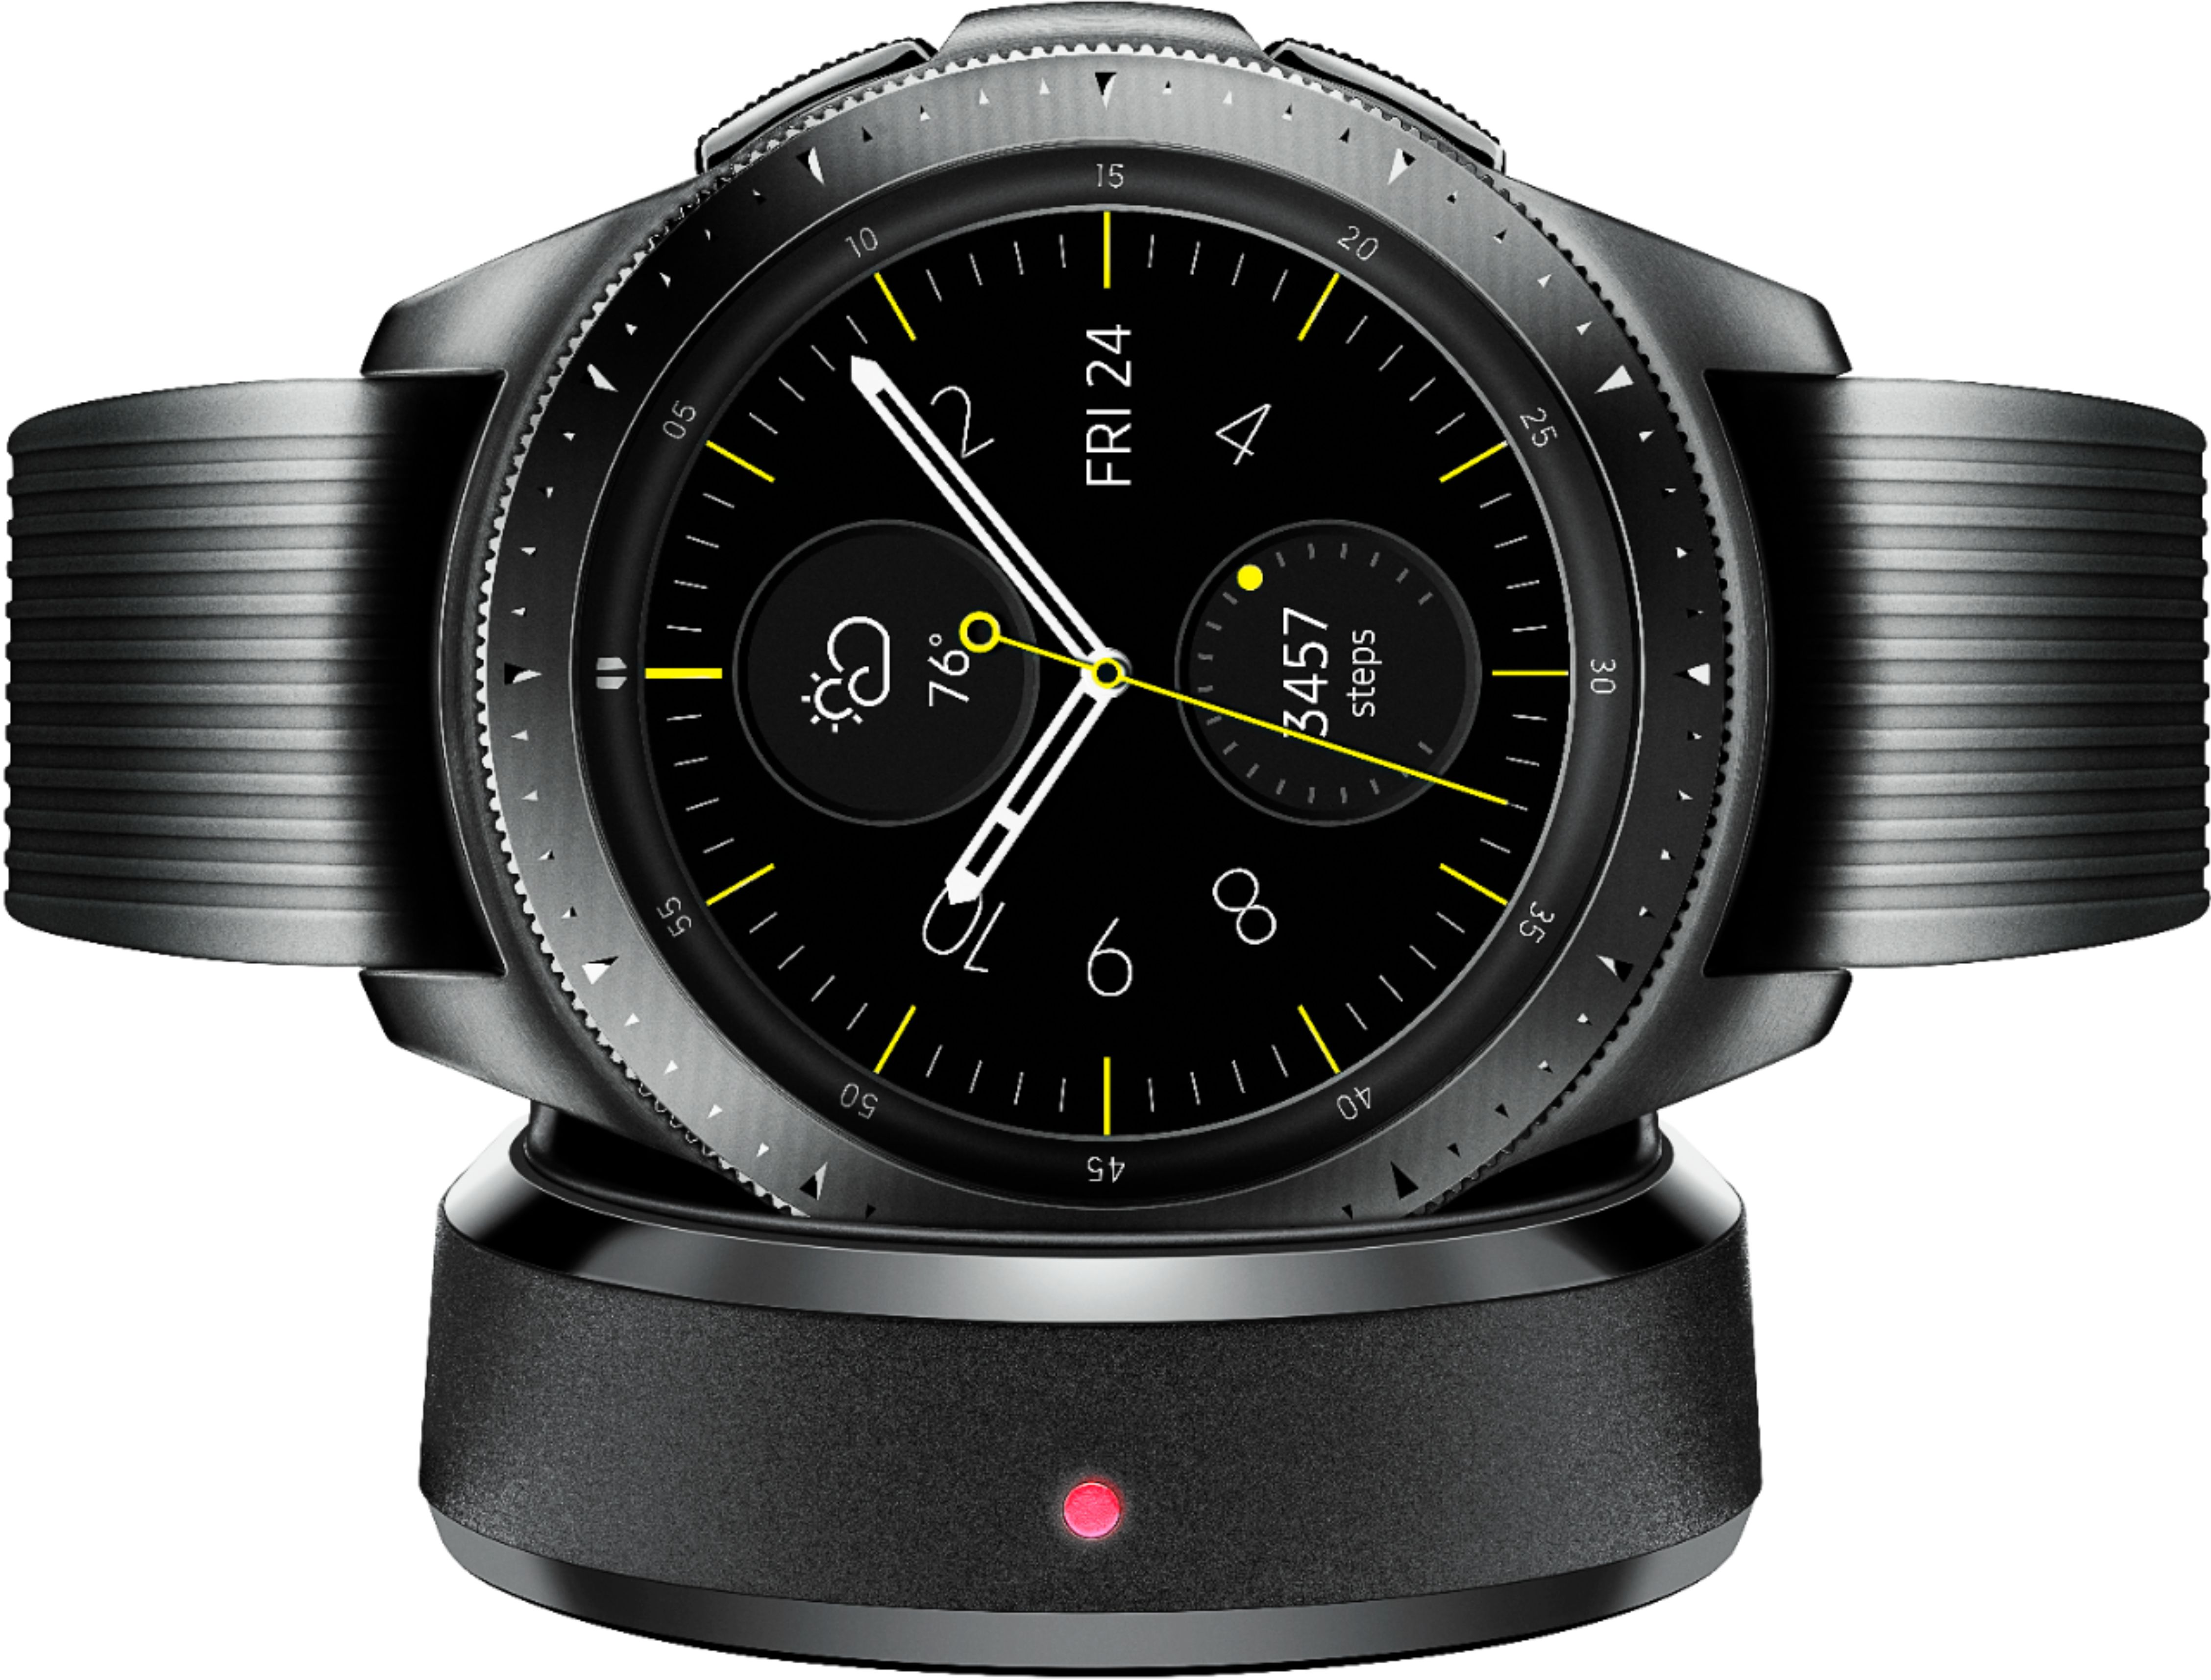 Samsung Galaxy Watch Smartwatch 42mm Stainless Steel Midnight Black Sm R810nzkaxar Best Buy